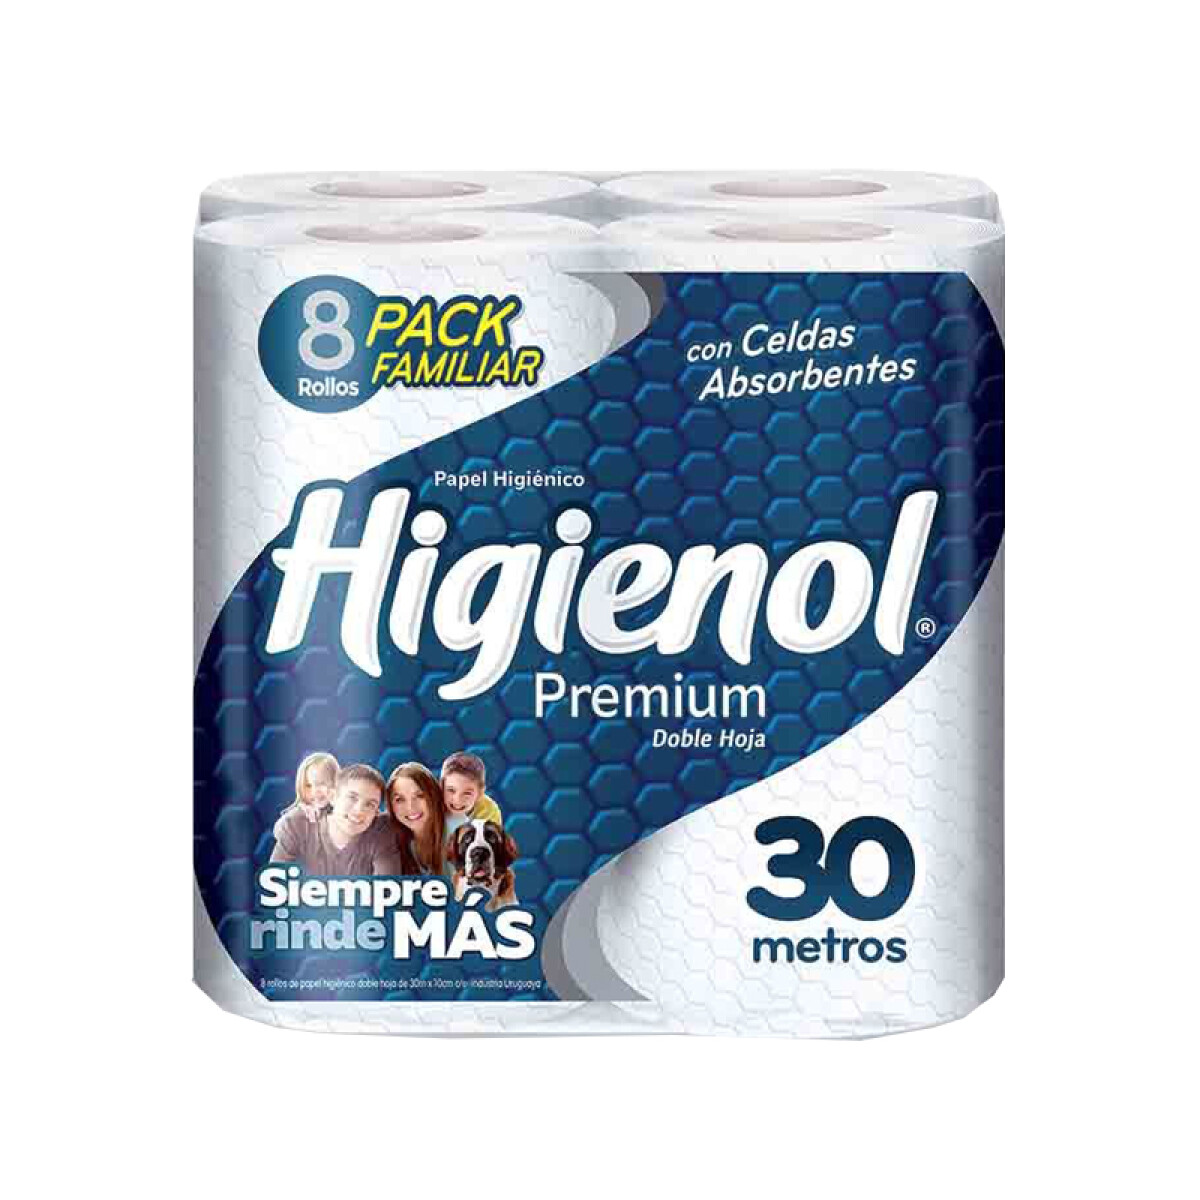 Papel Higiénico HIGIENOL Premium 8 Rollos 30m 